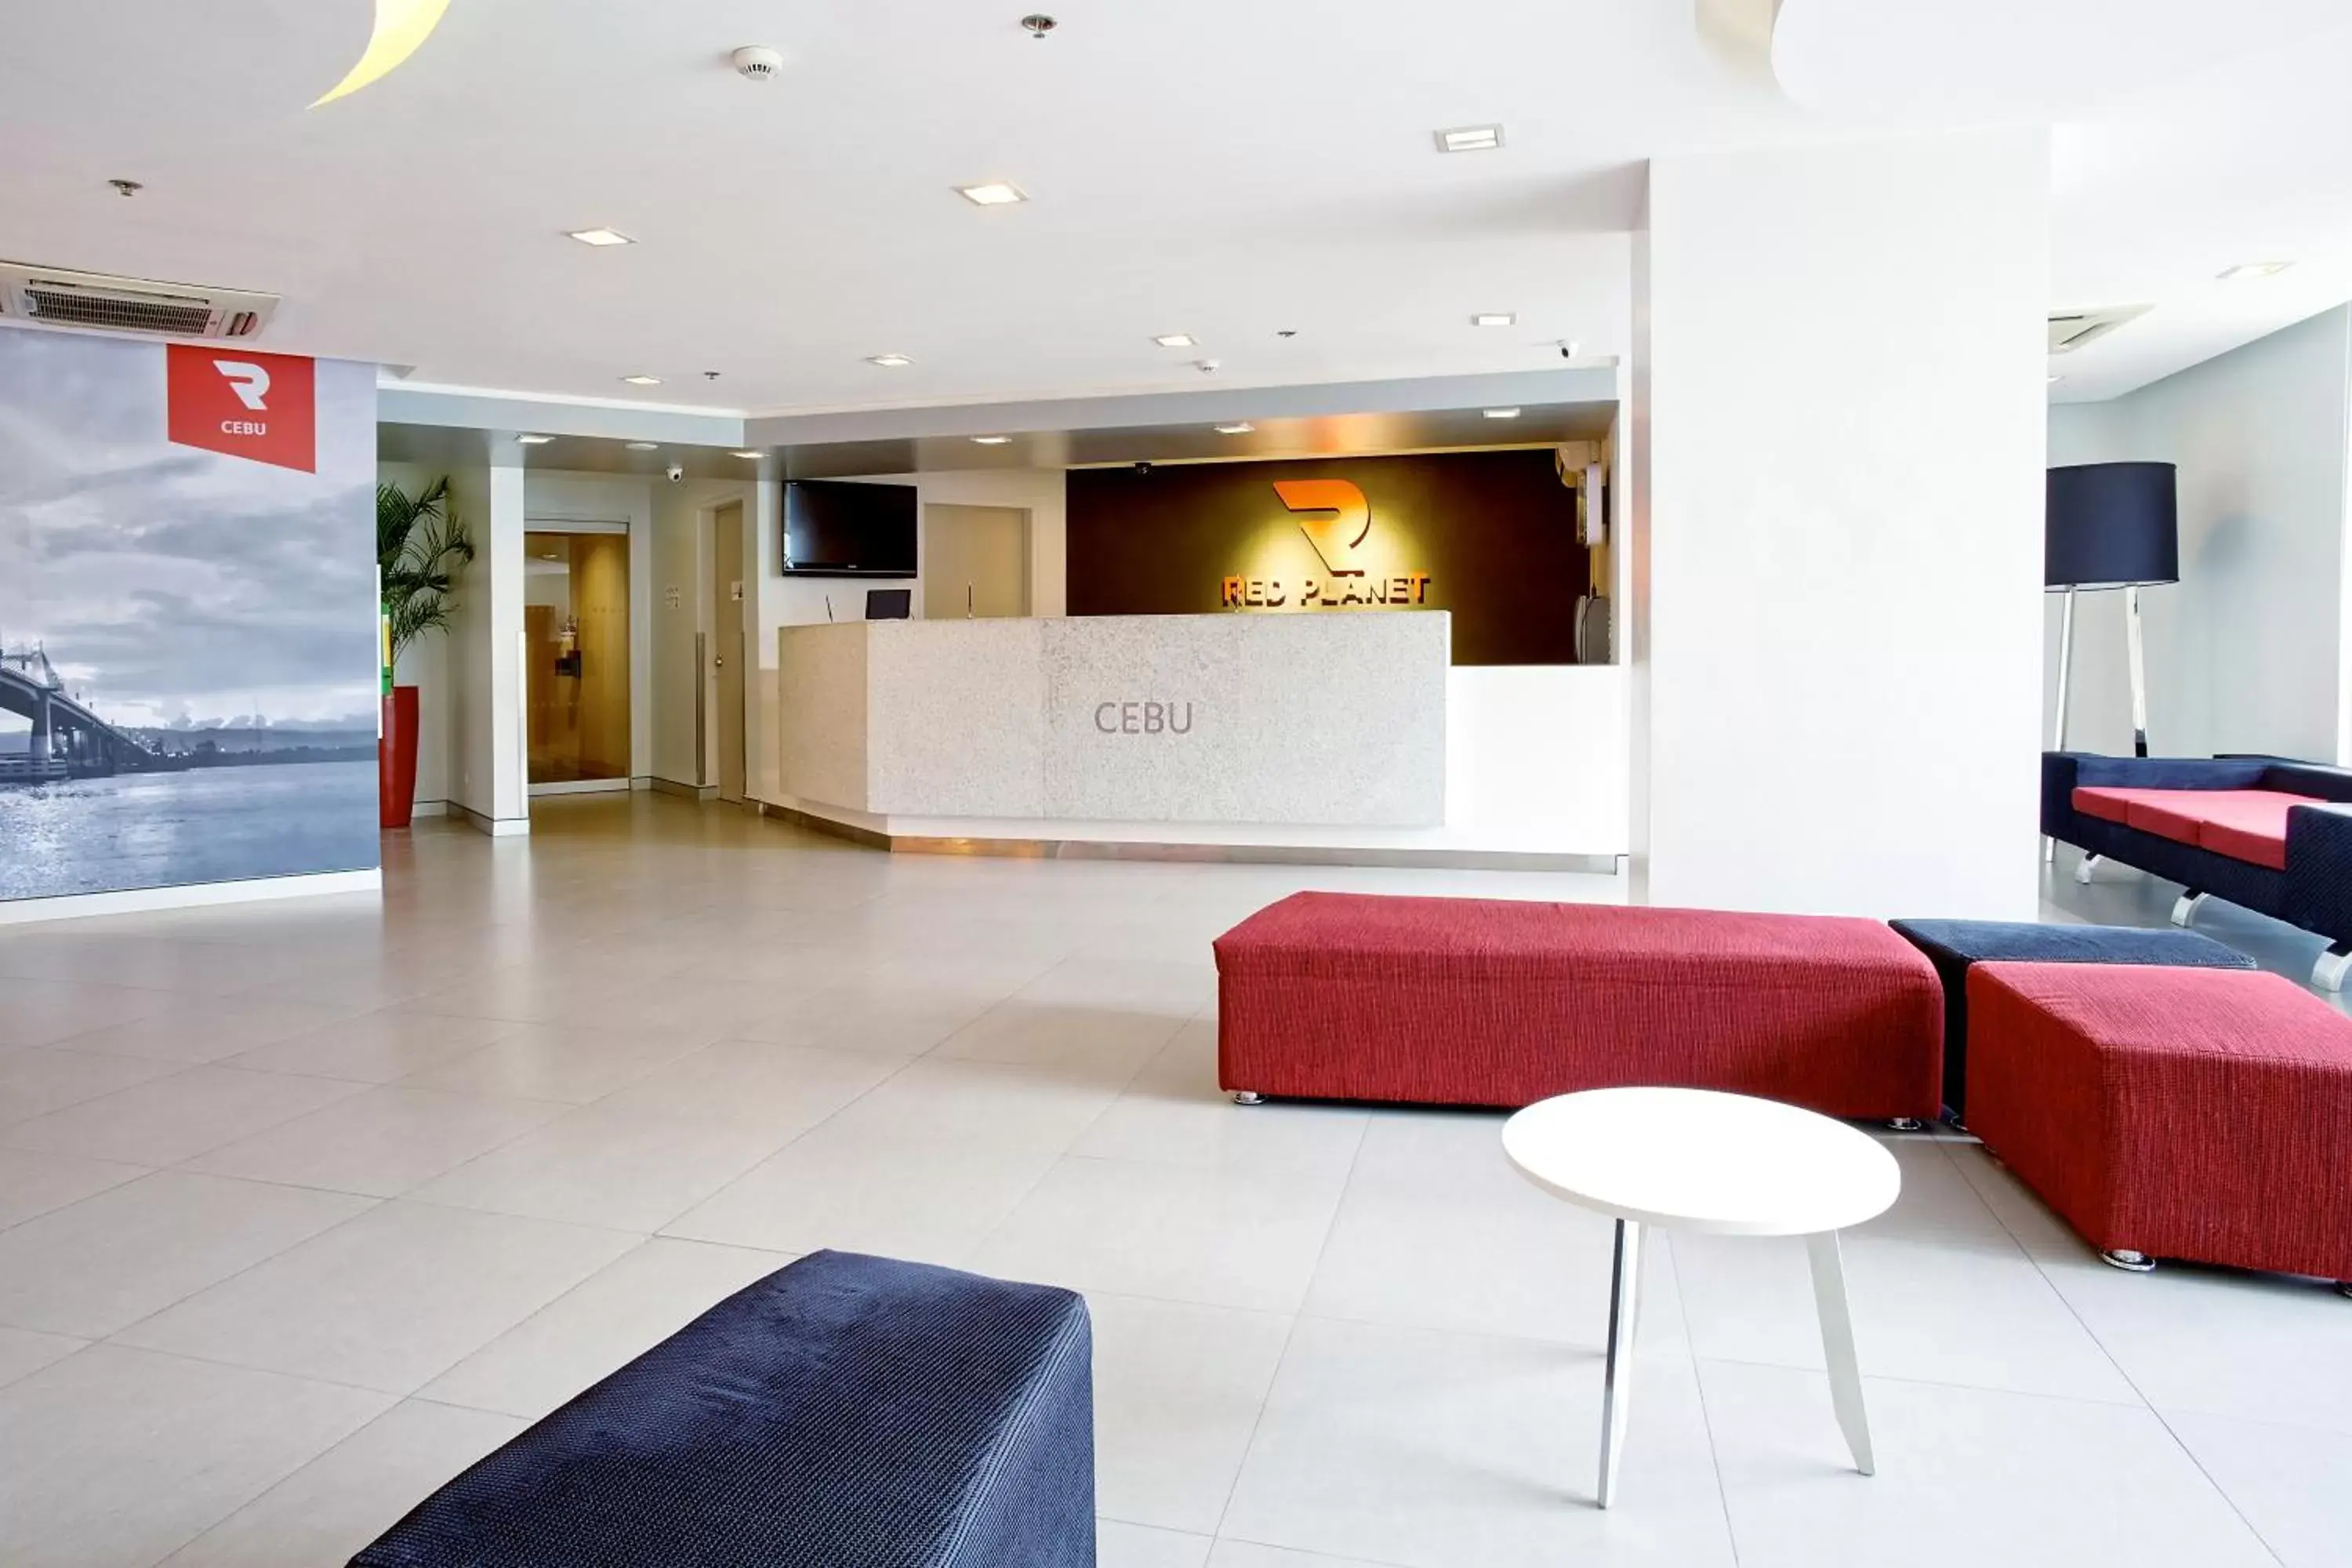 Lobby or reception, Lobby/Reception in Red Planet Cebu